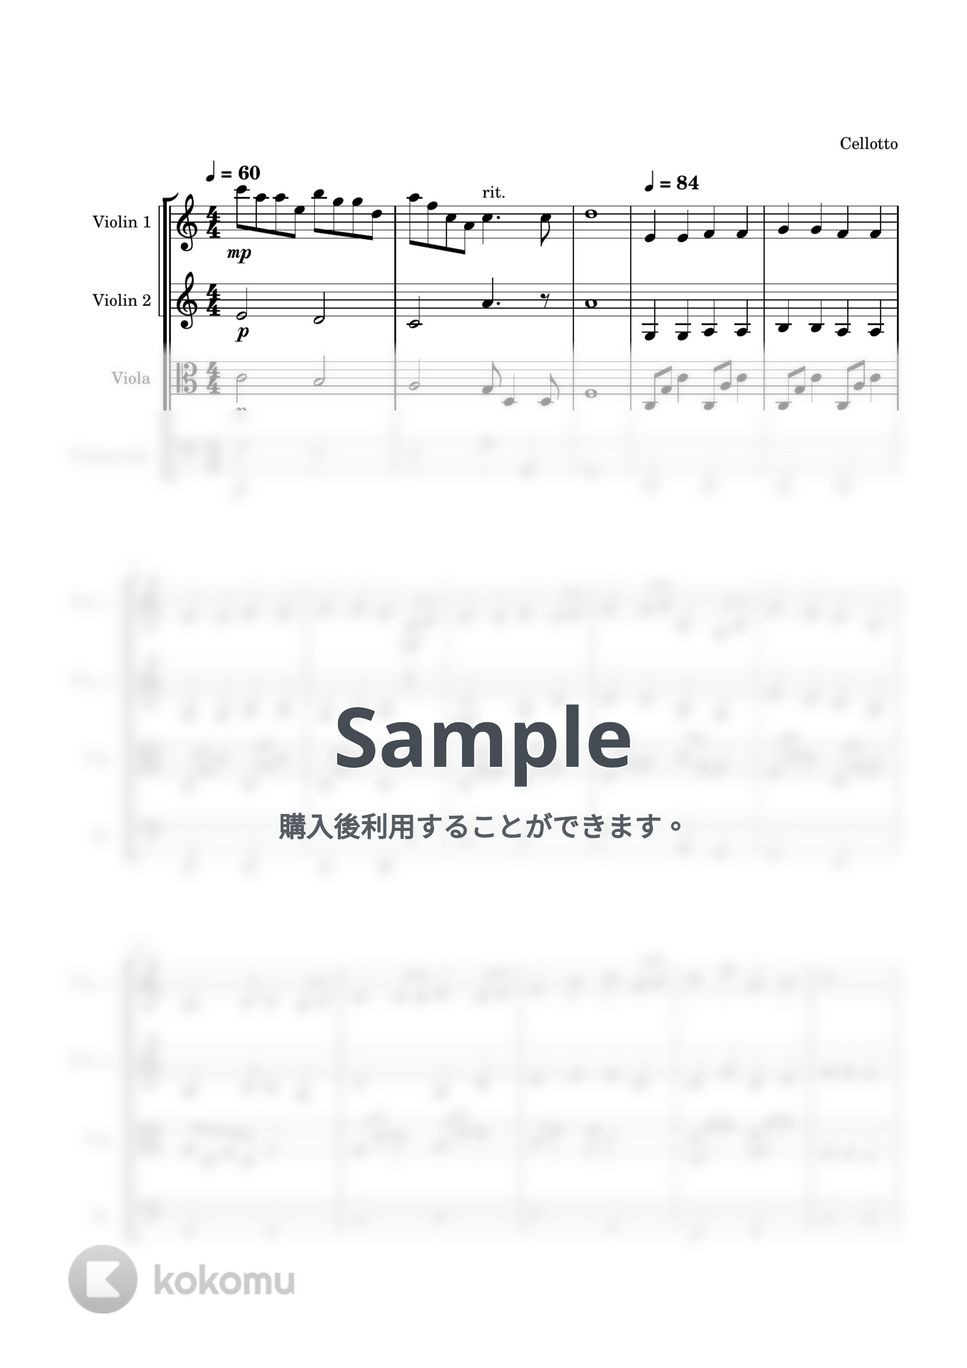 嵐 - ふるさと (弦楽四重奏) by Cellotto